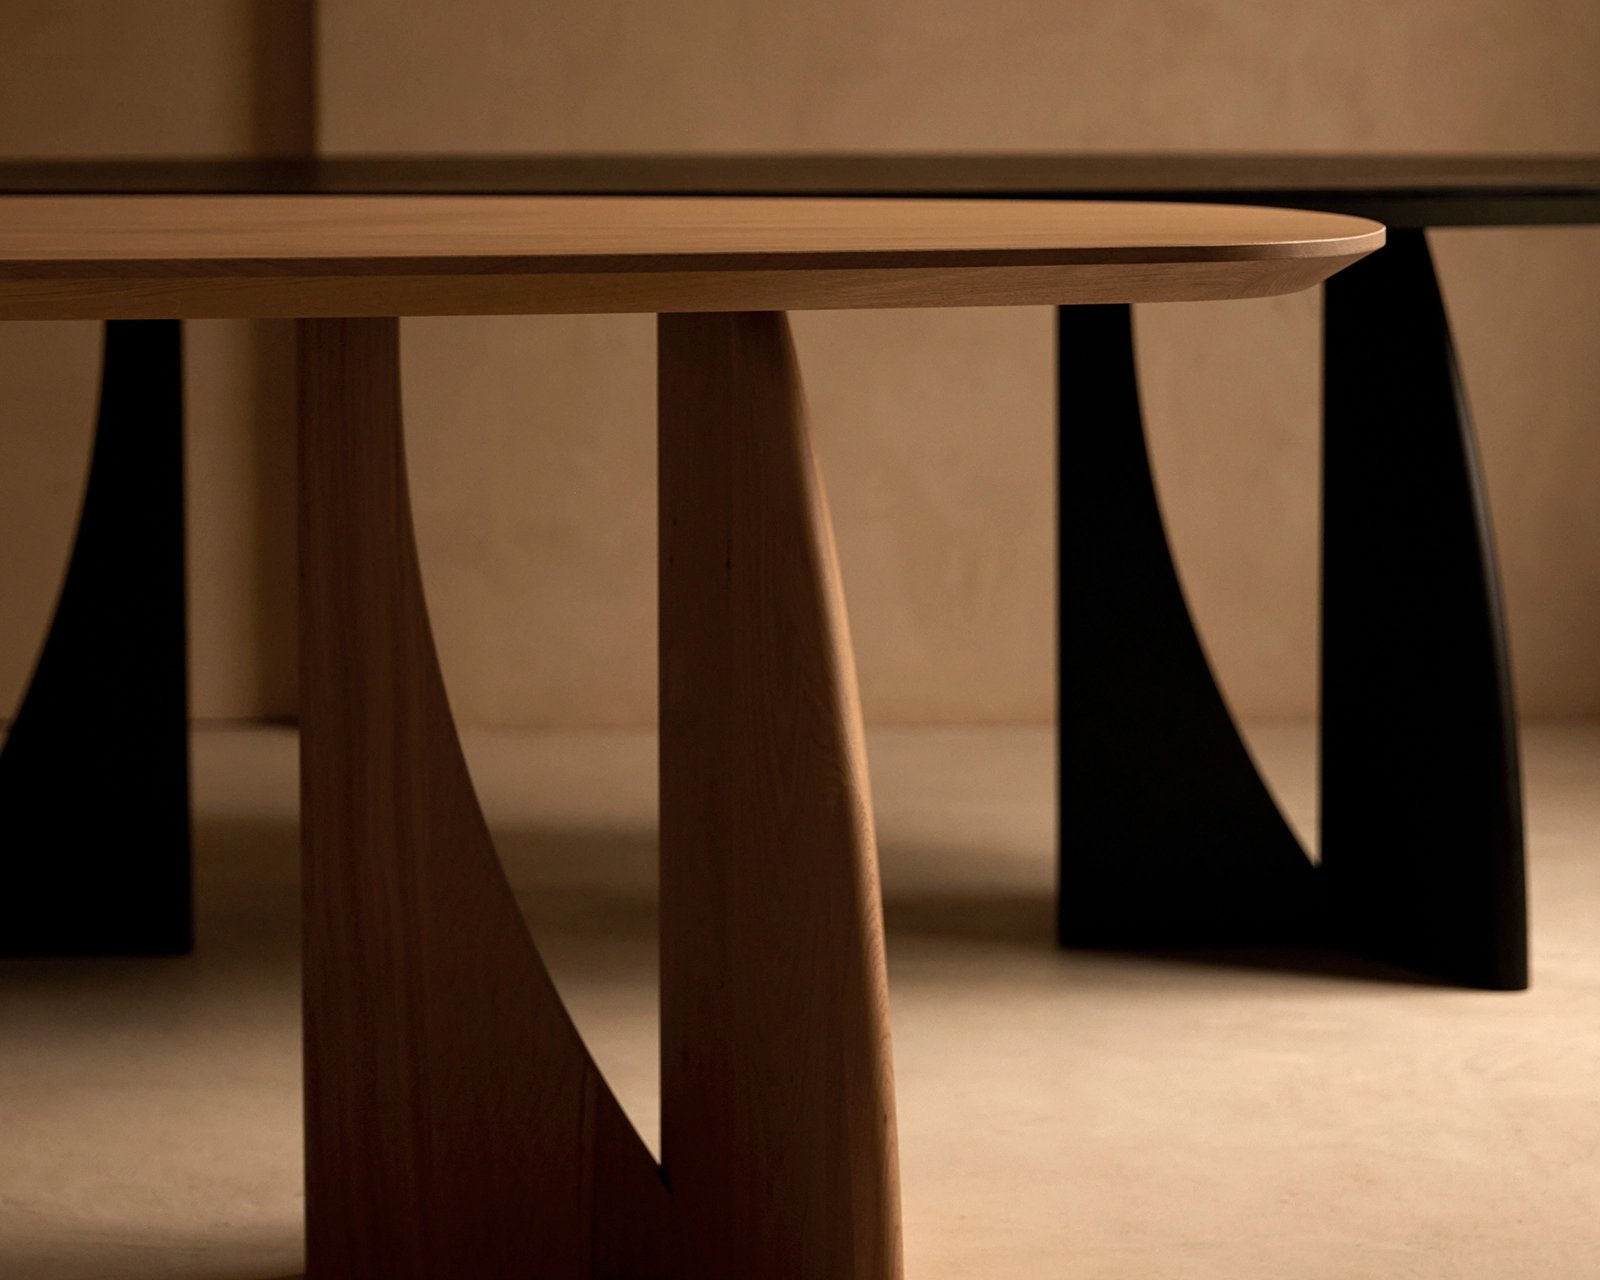 Table du Sud X Art in Return eettafel in deep black (9005) en in ultra matte lak.